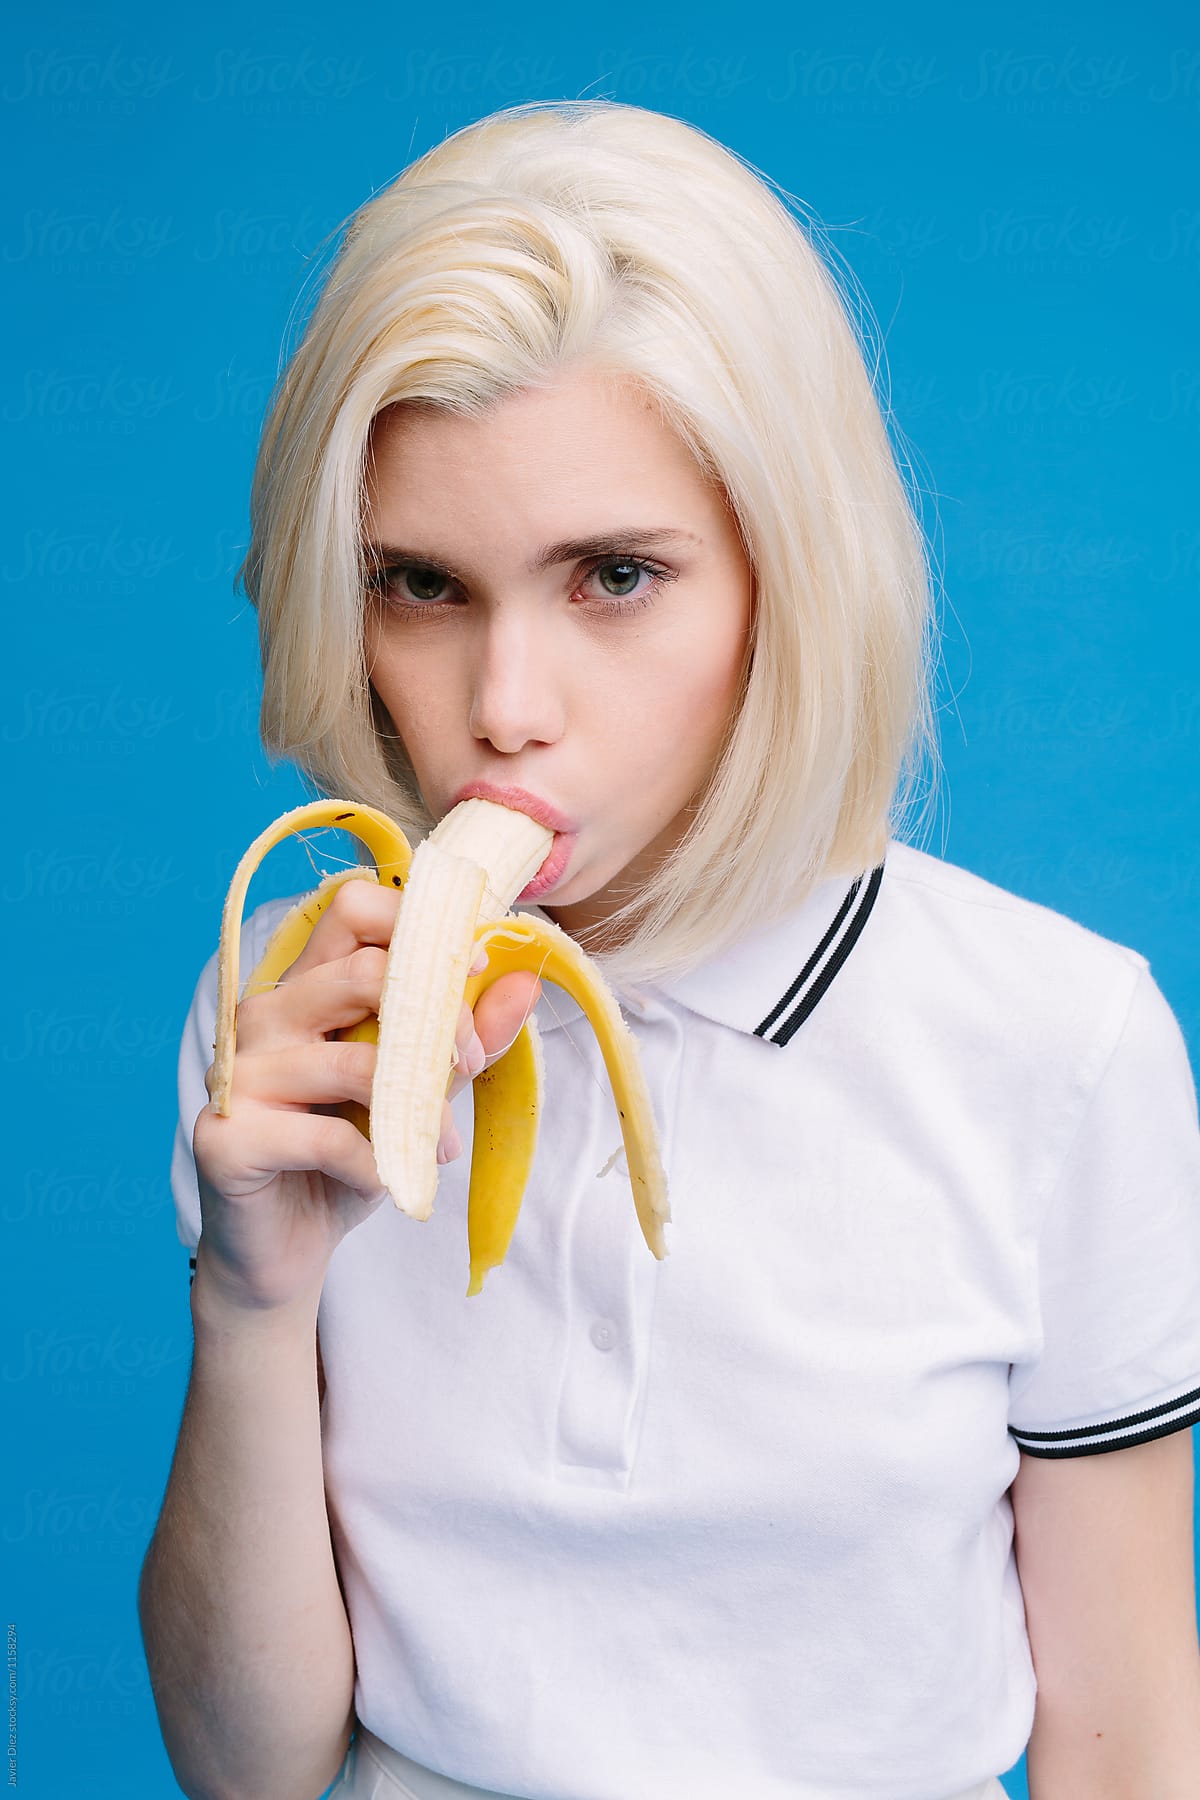 Hot Women Eating Banana Sexiezpicz Web Porn